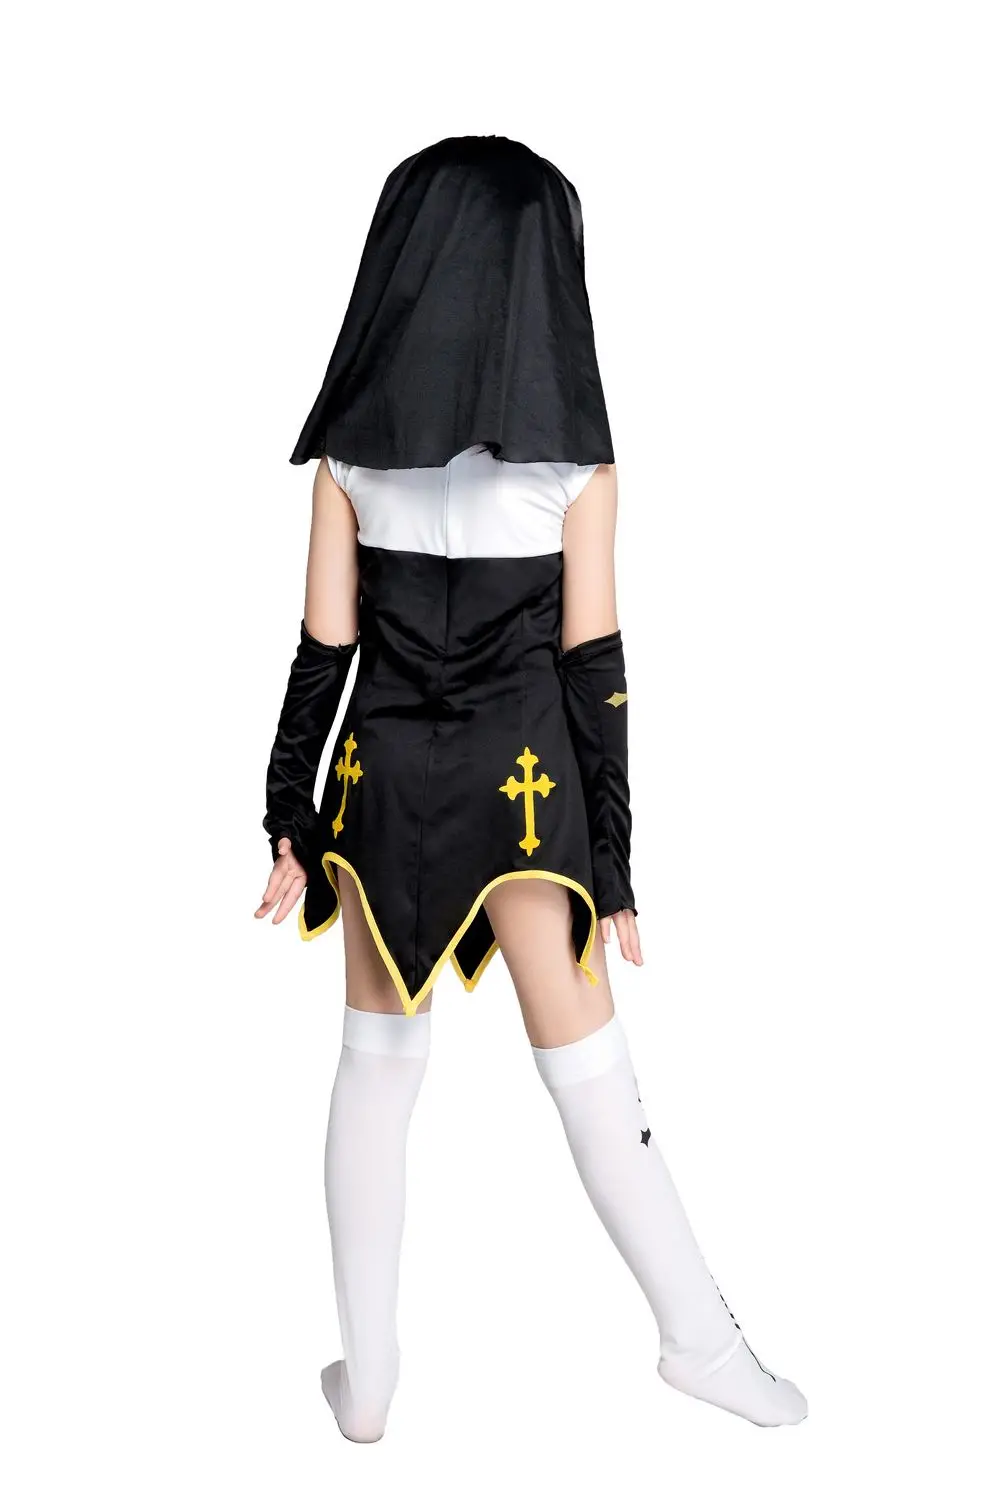 Nun Дети Косплей Необычные платья для косплея наряд на карнавал костюм SM1889